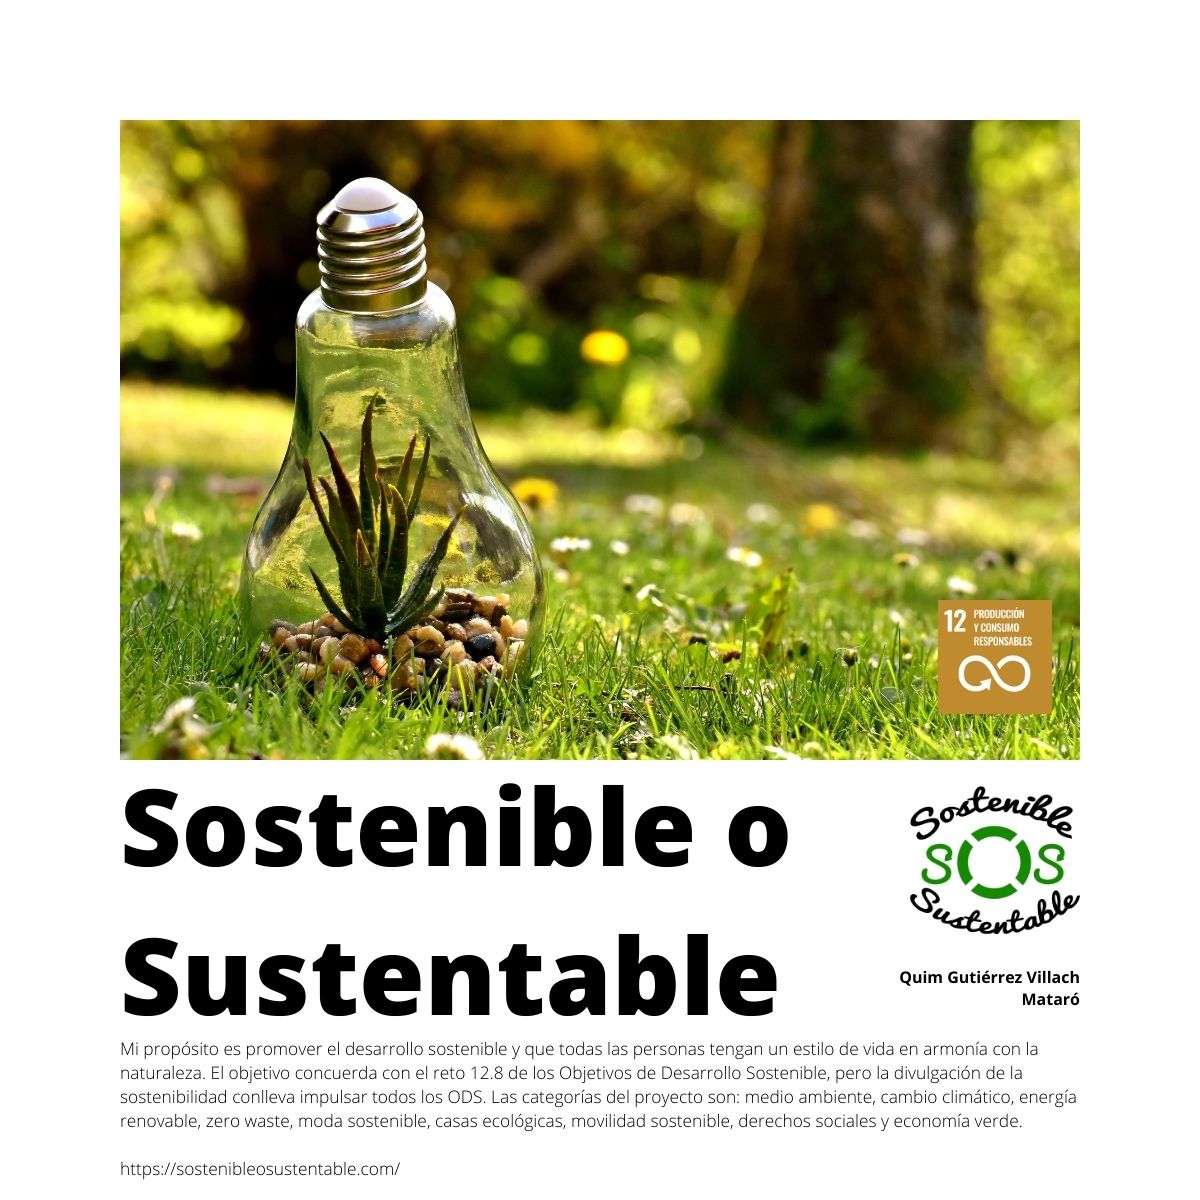 Sostenible o sustentable @sostenibleo